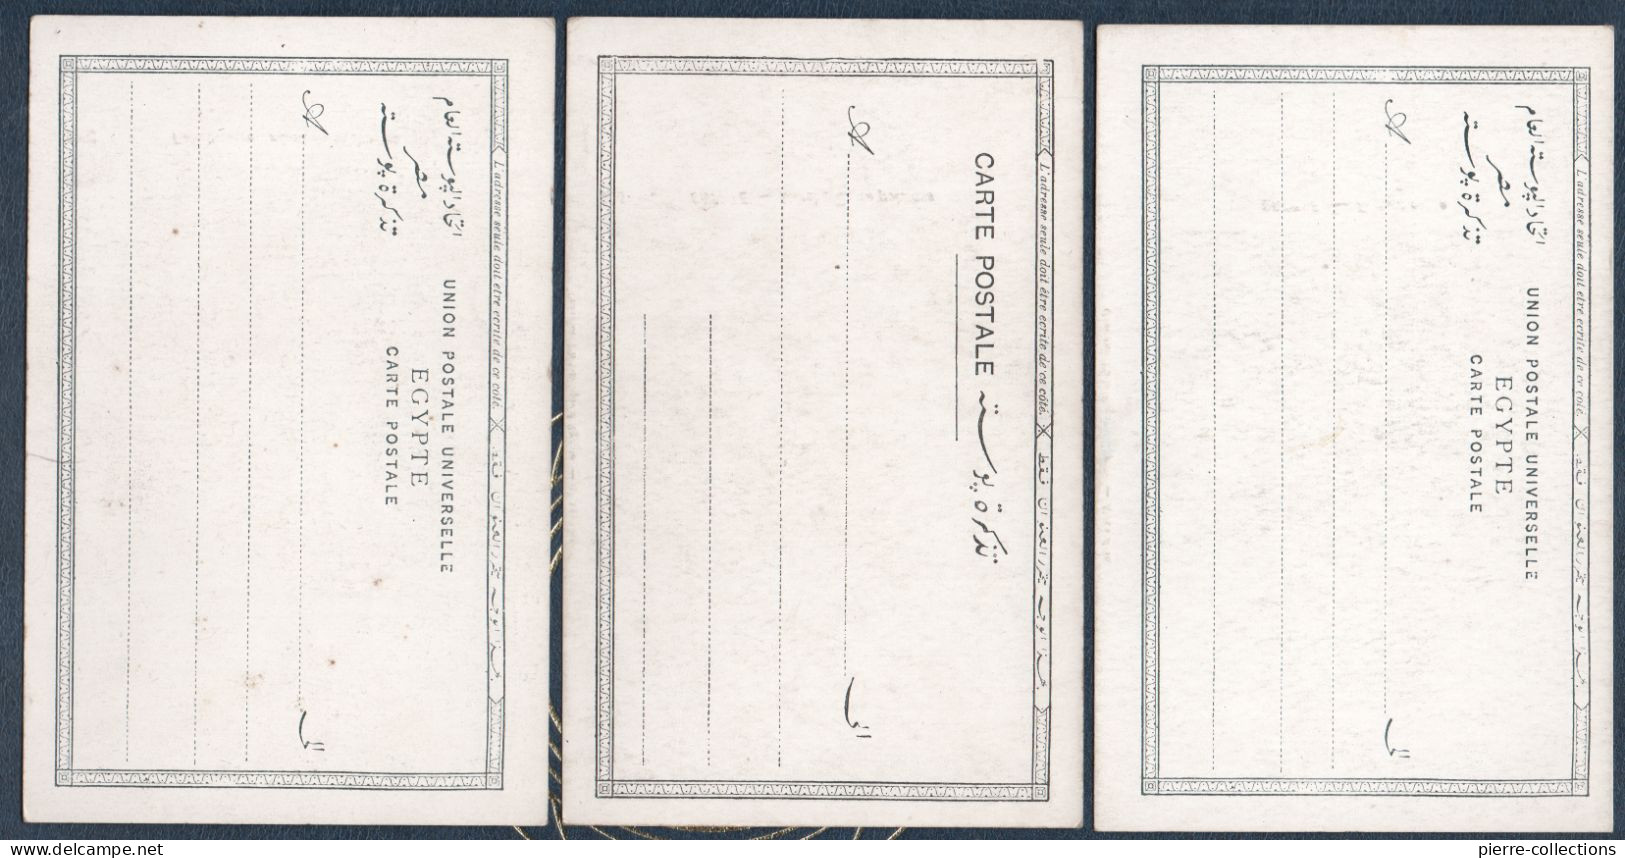 Egypte - Lot de 14 cartes postales anciennes - Palais - Femmes - Postes - métiers - bateaux